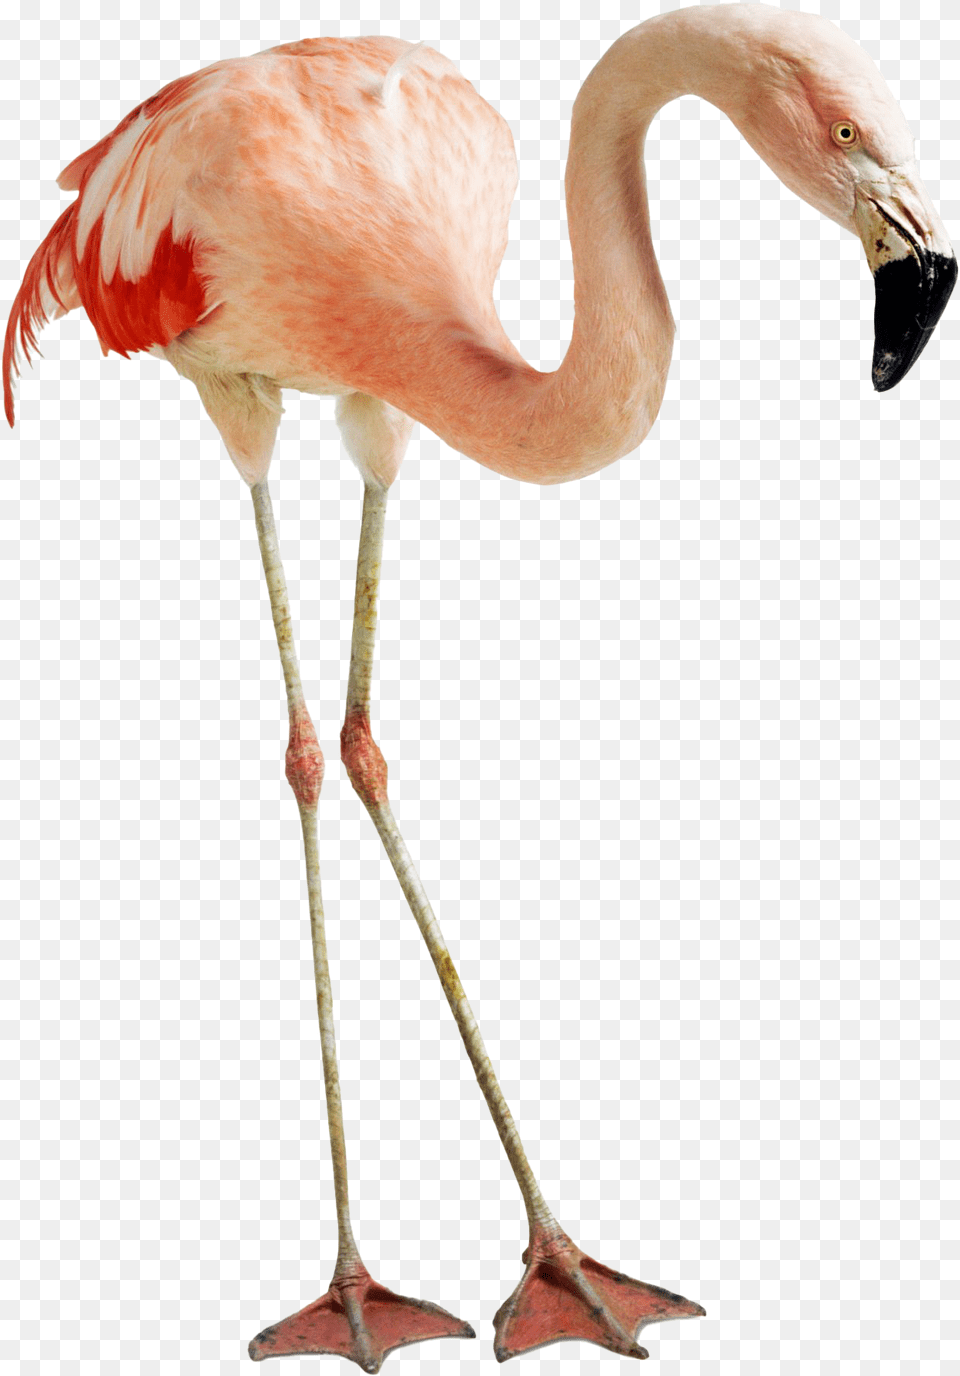 Flamingo Photos Feet And Beak Of Flamingo, Animal, Bird Png Image